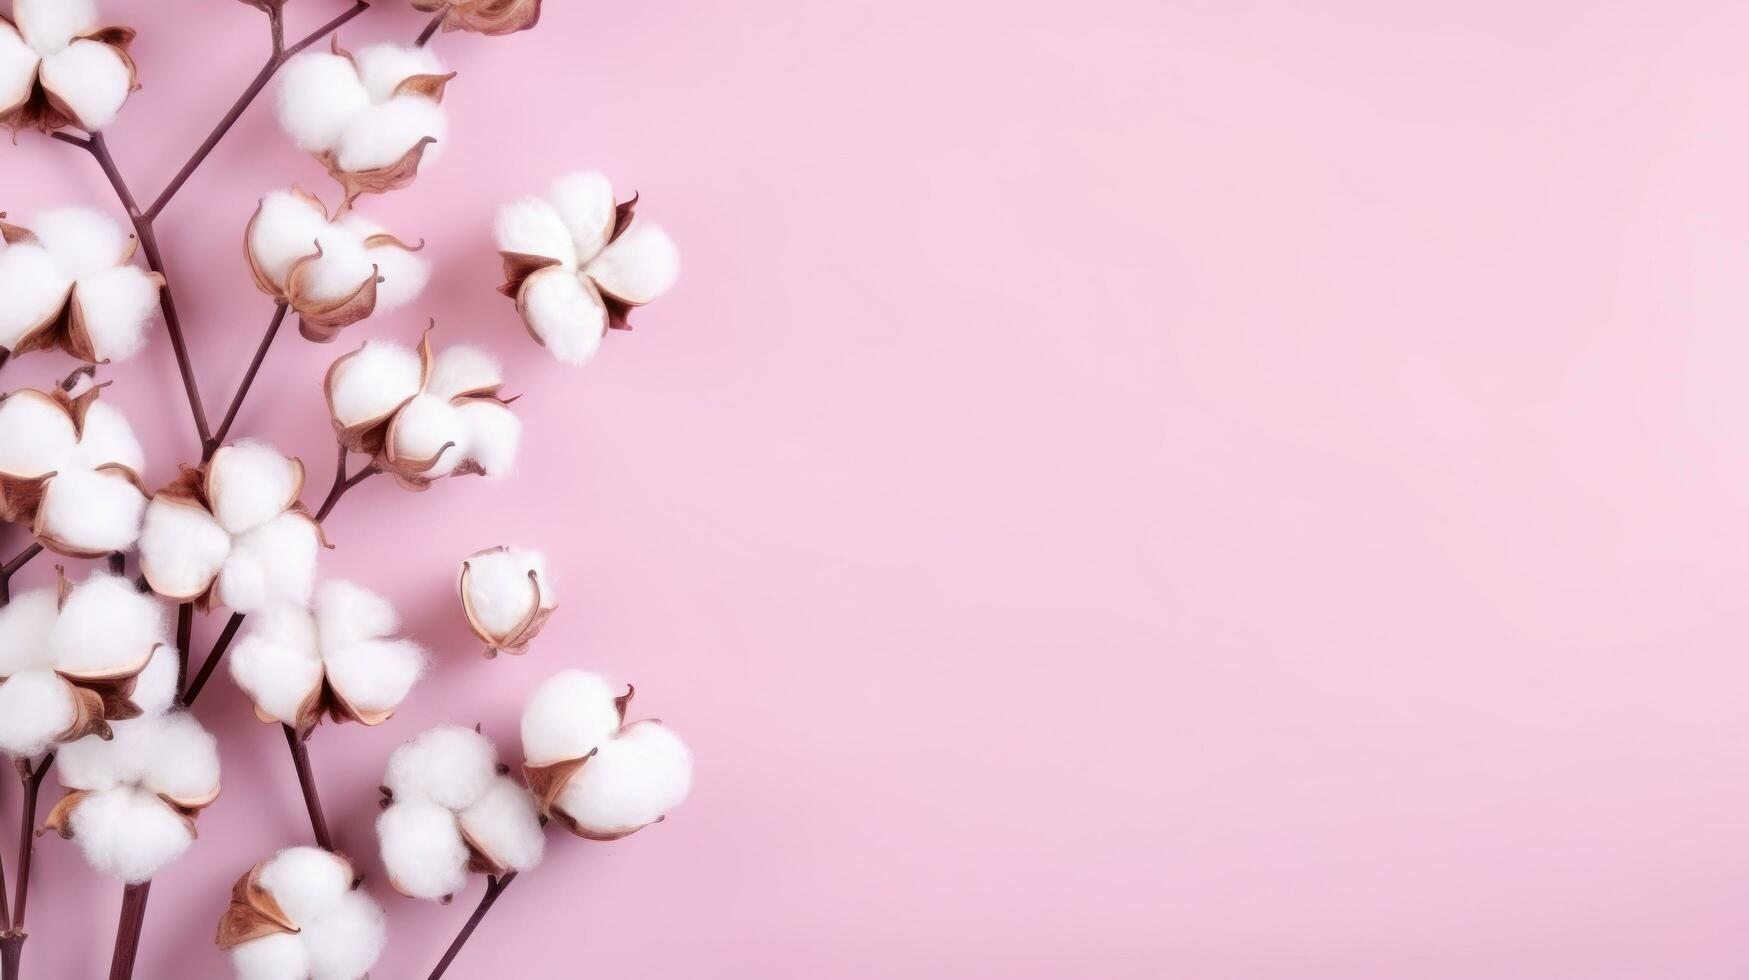 Rosa minimalista fundo com algodão almofadas foto